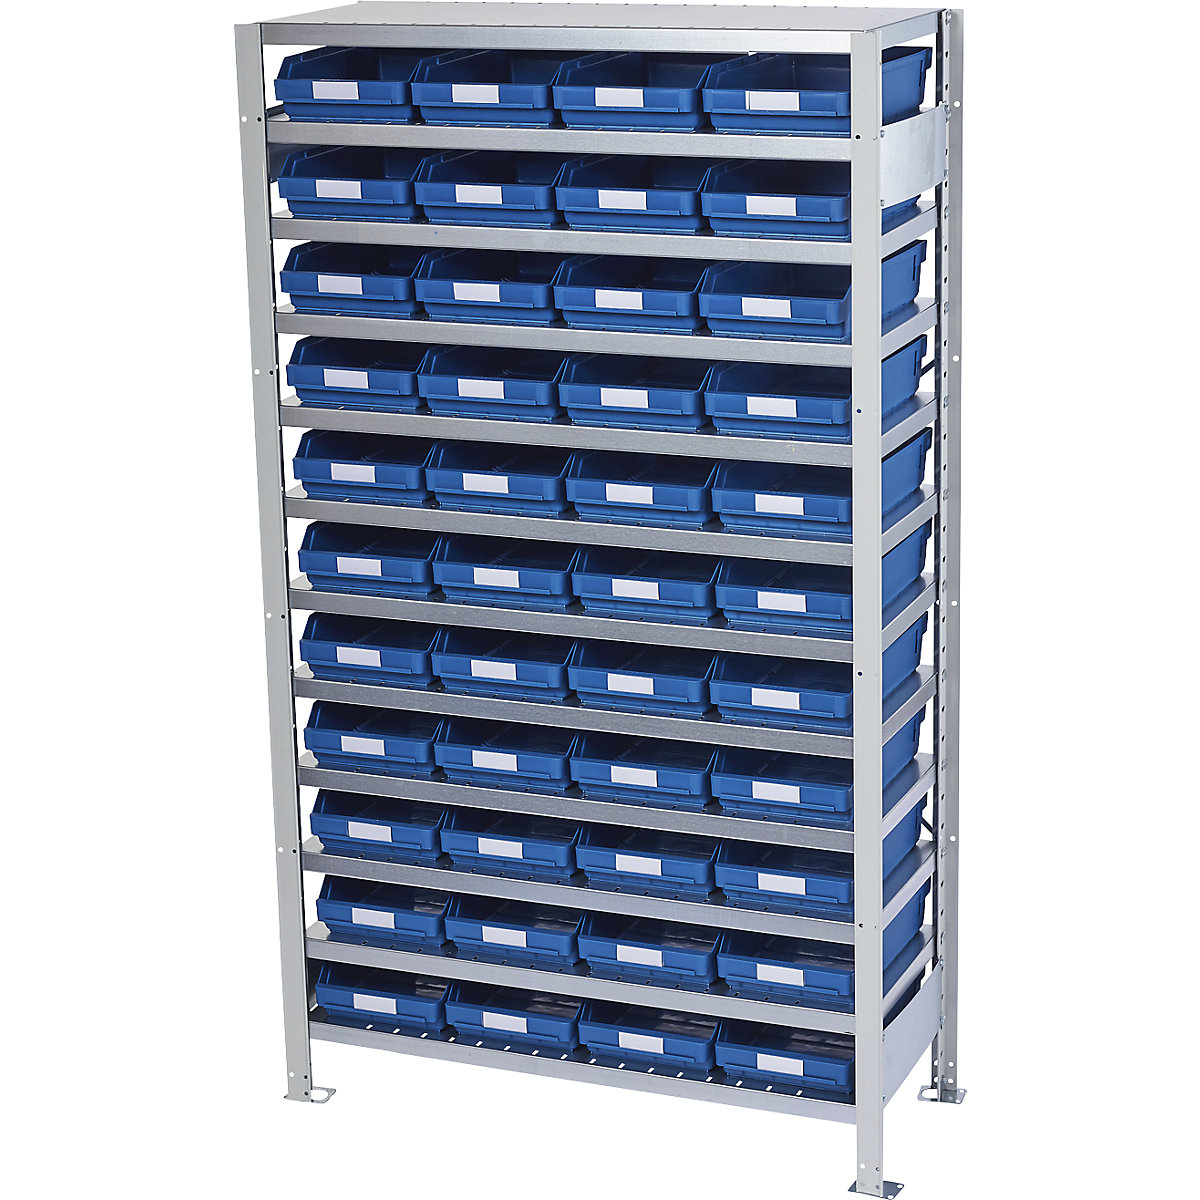 Összedugaszolós állvány dobozokkal – STEMO, állványmagasság 1790 mm, alapállvány, 300 mm mély, 44 kék doboz-11